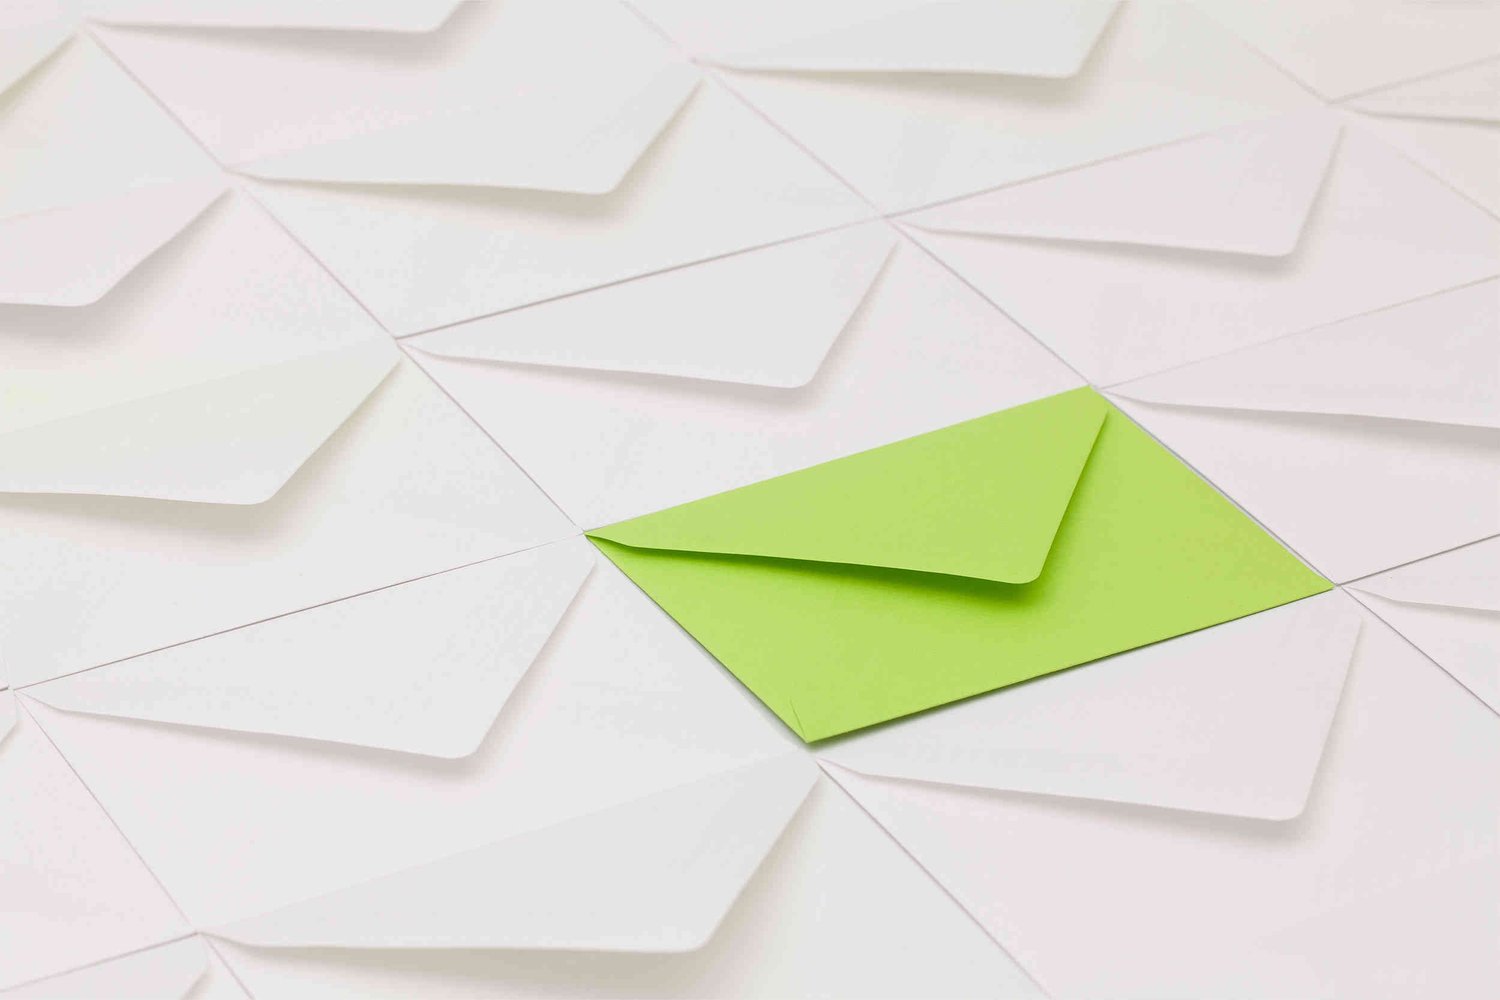 Green envelope amongst other white envelopes